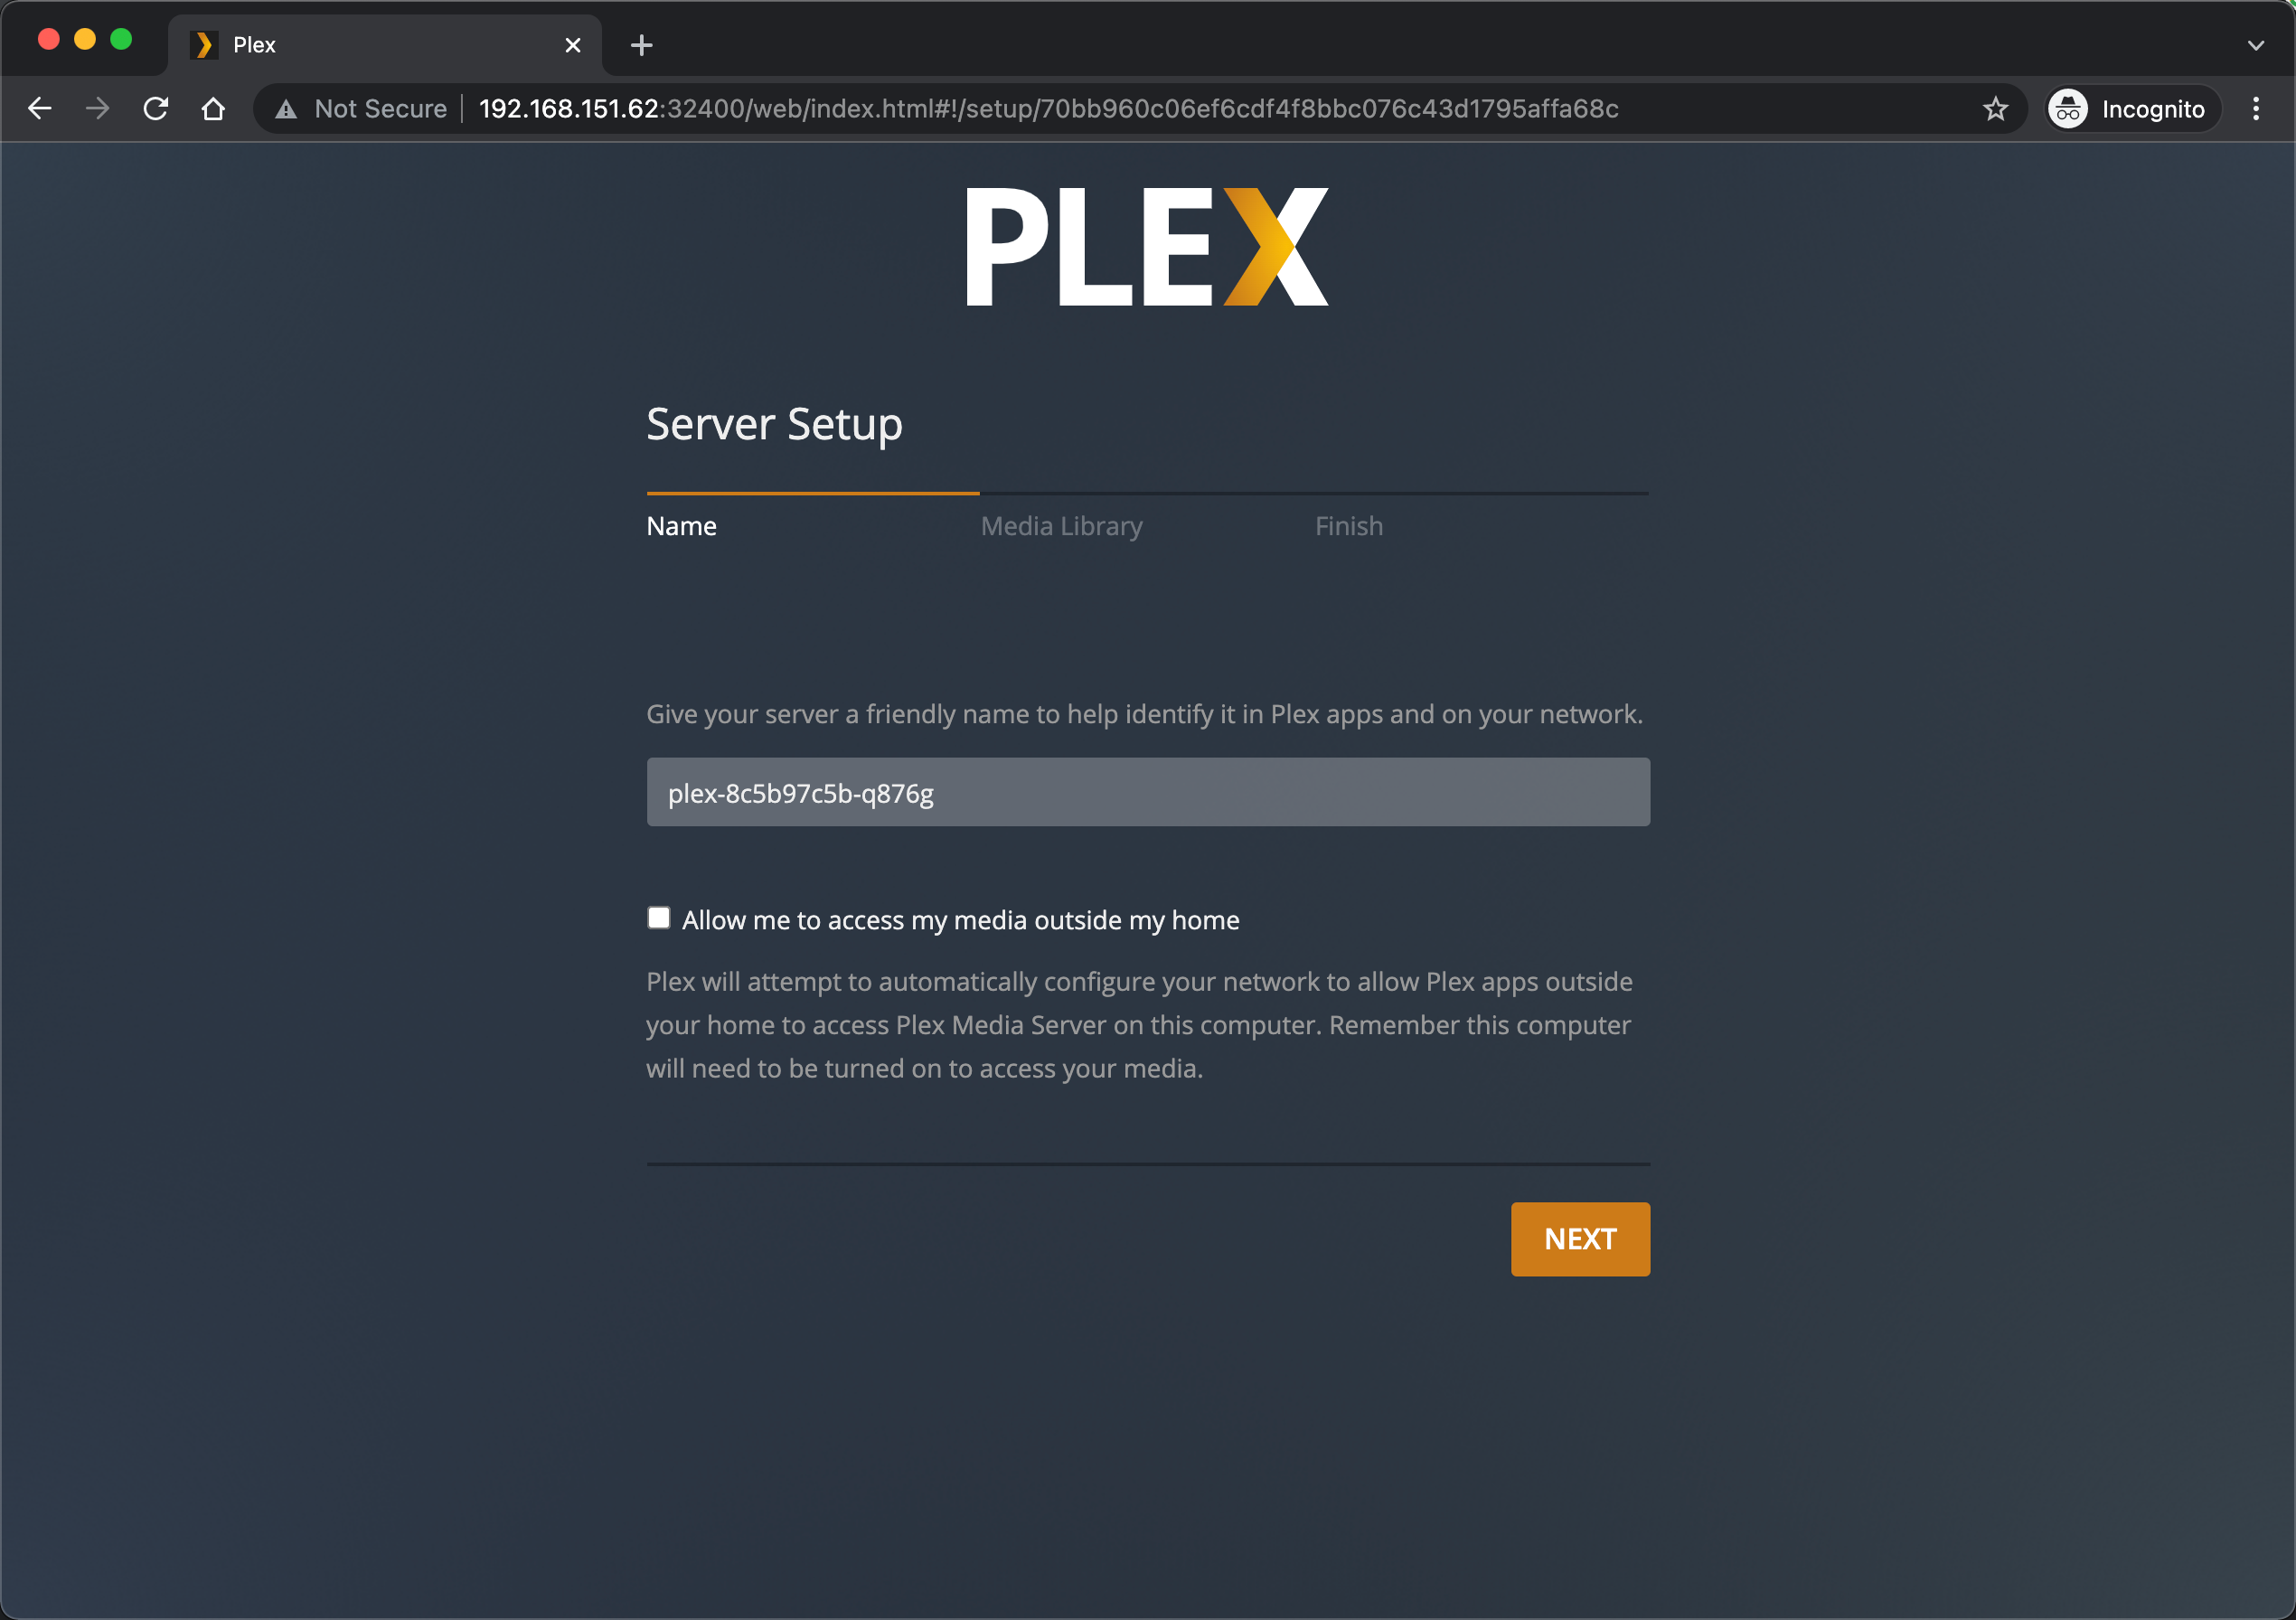 Initial Plex configuration